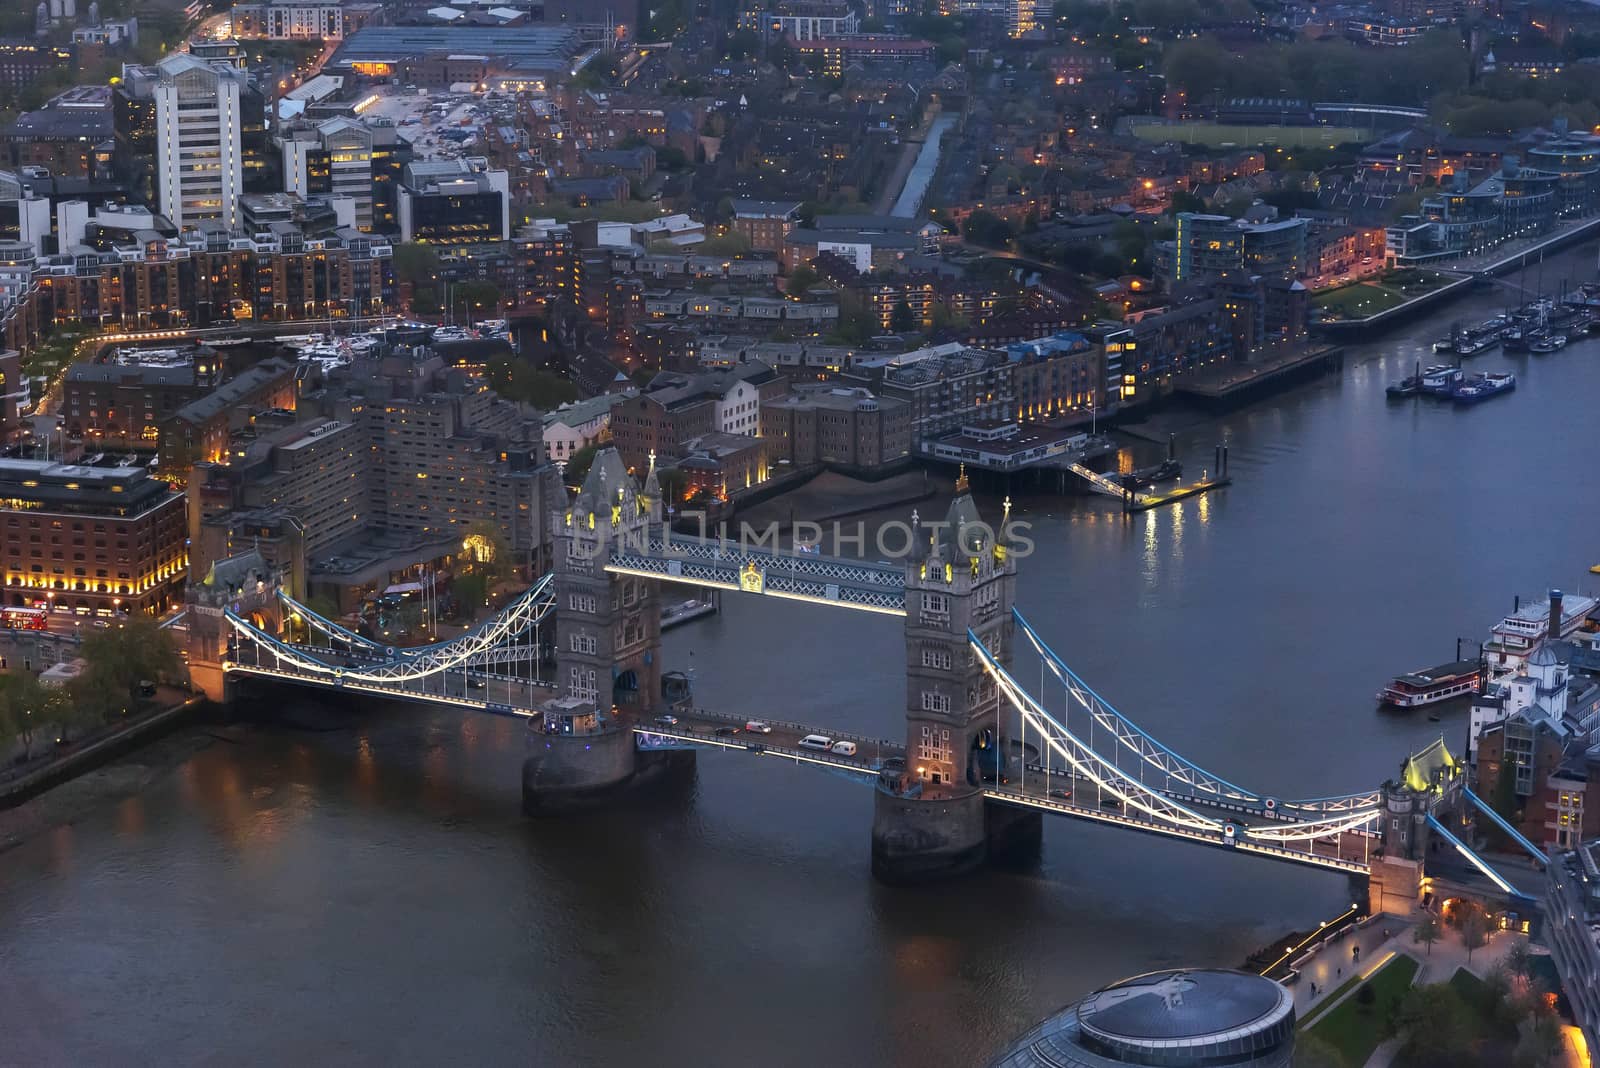 Aerial view of Tower Bridge in London at dusk by mkos83